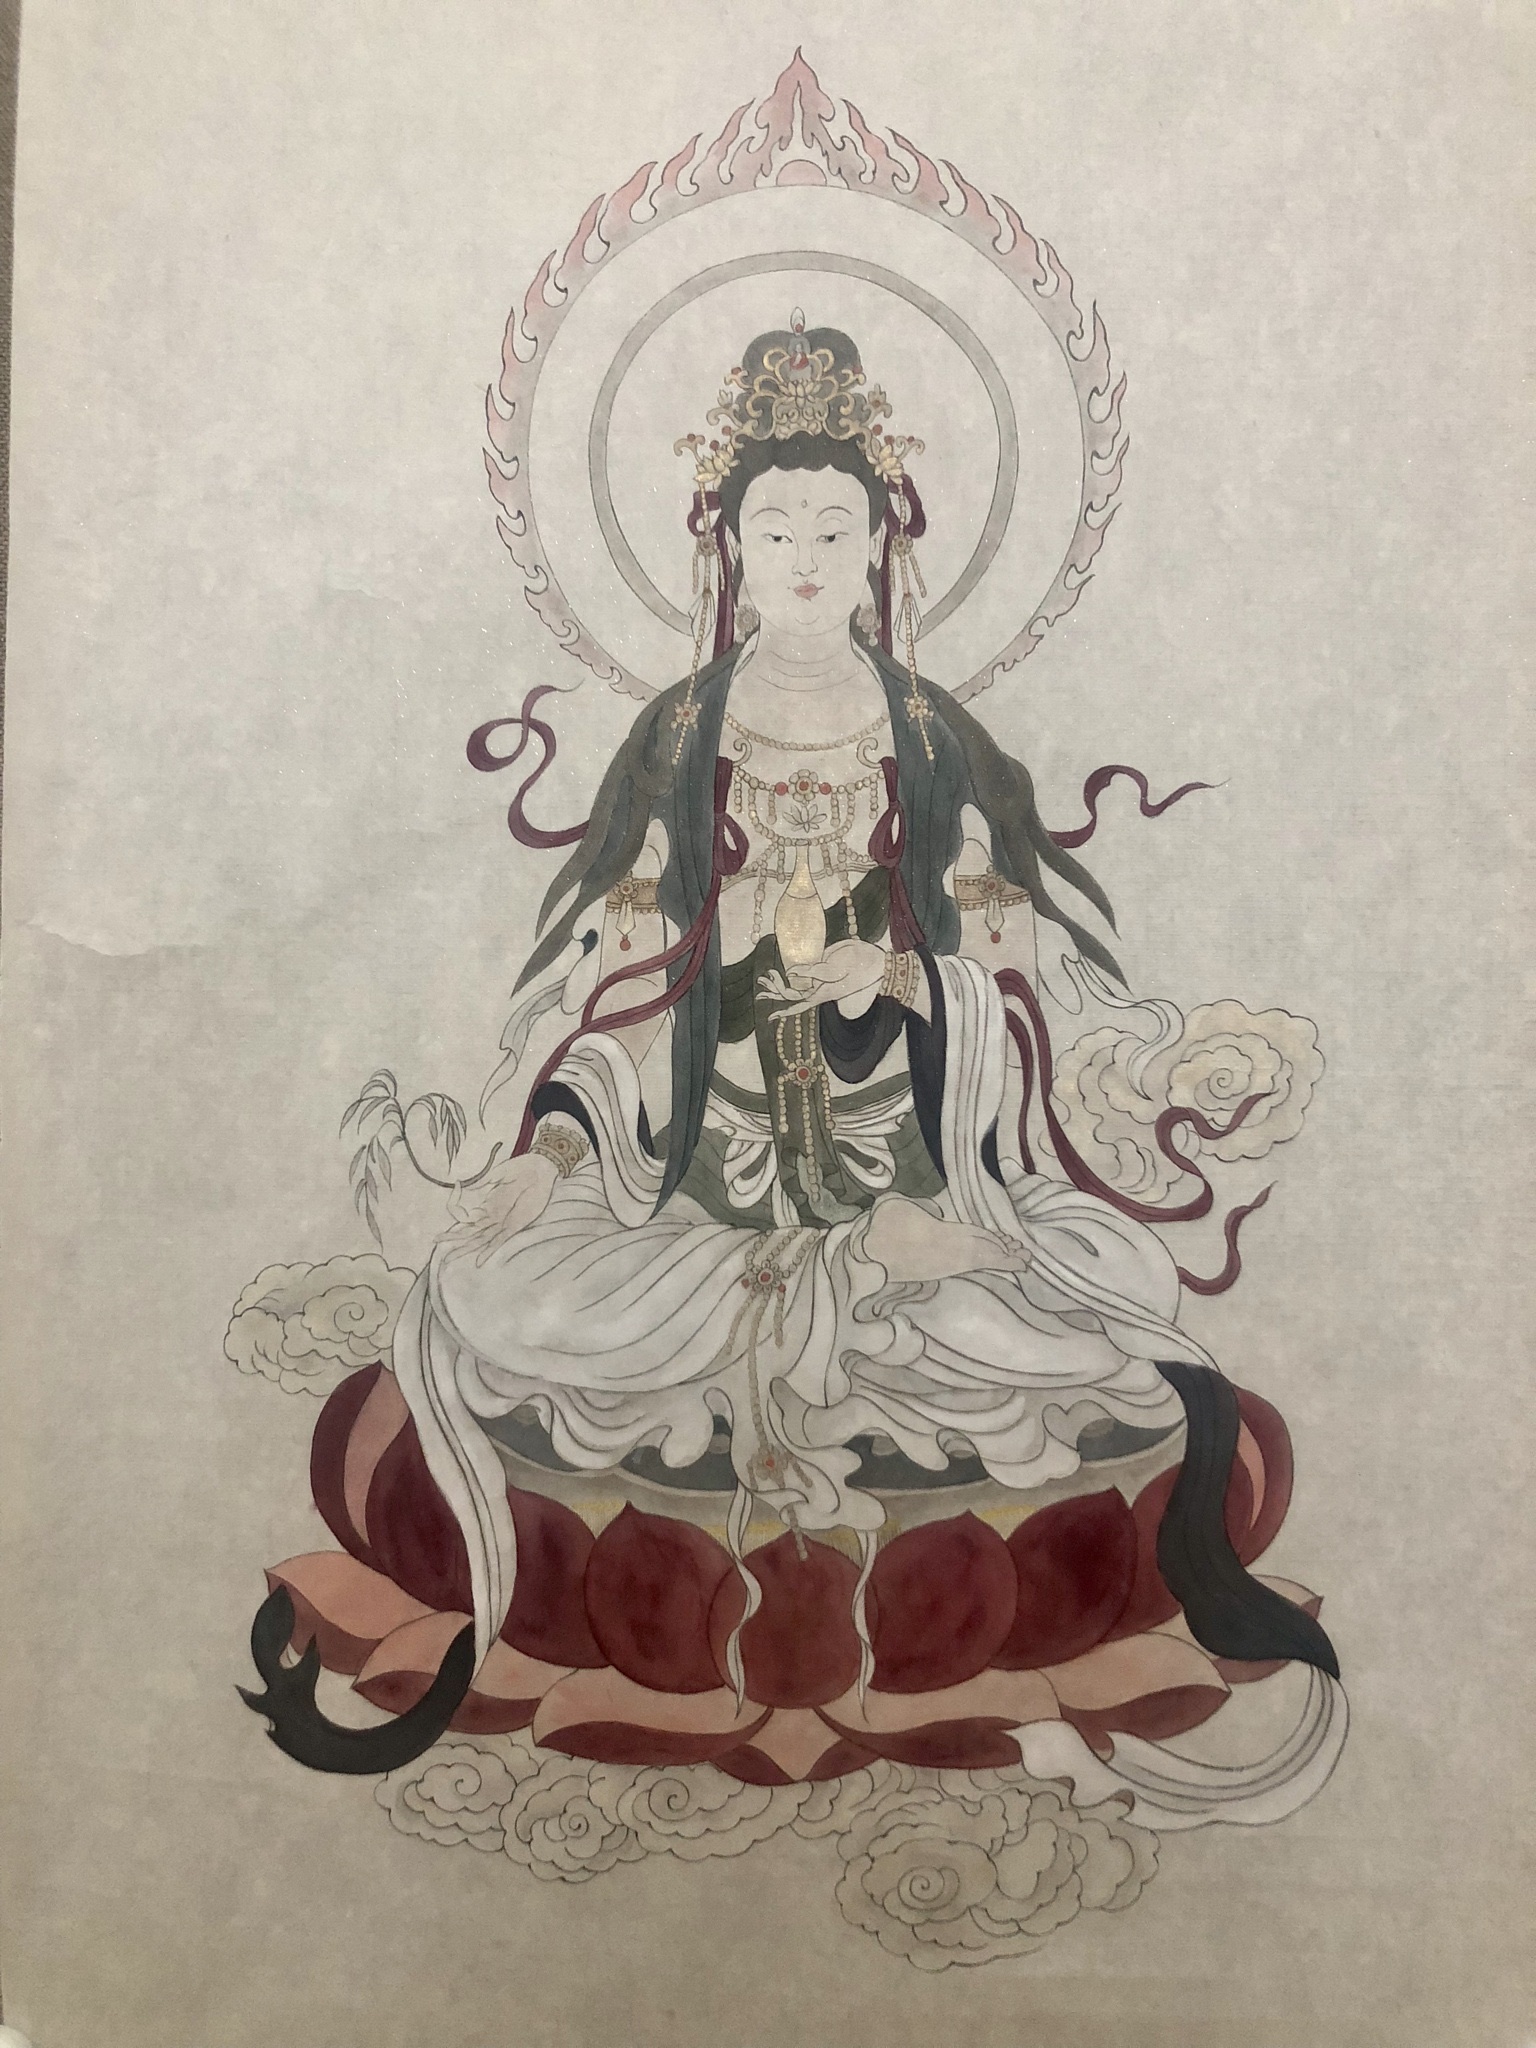 灵谷山房工笔手绘佛像系列课程第4期文殊菩萨像